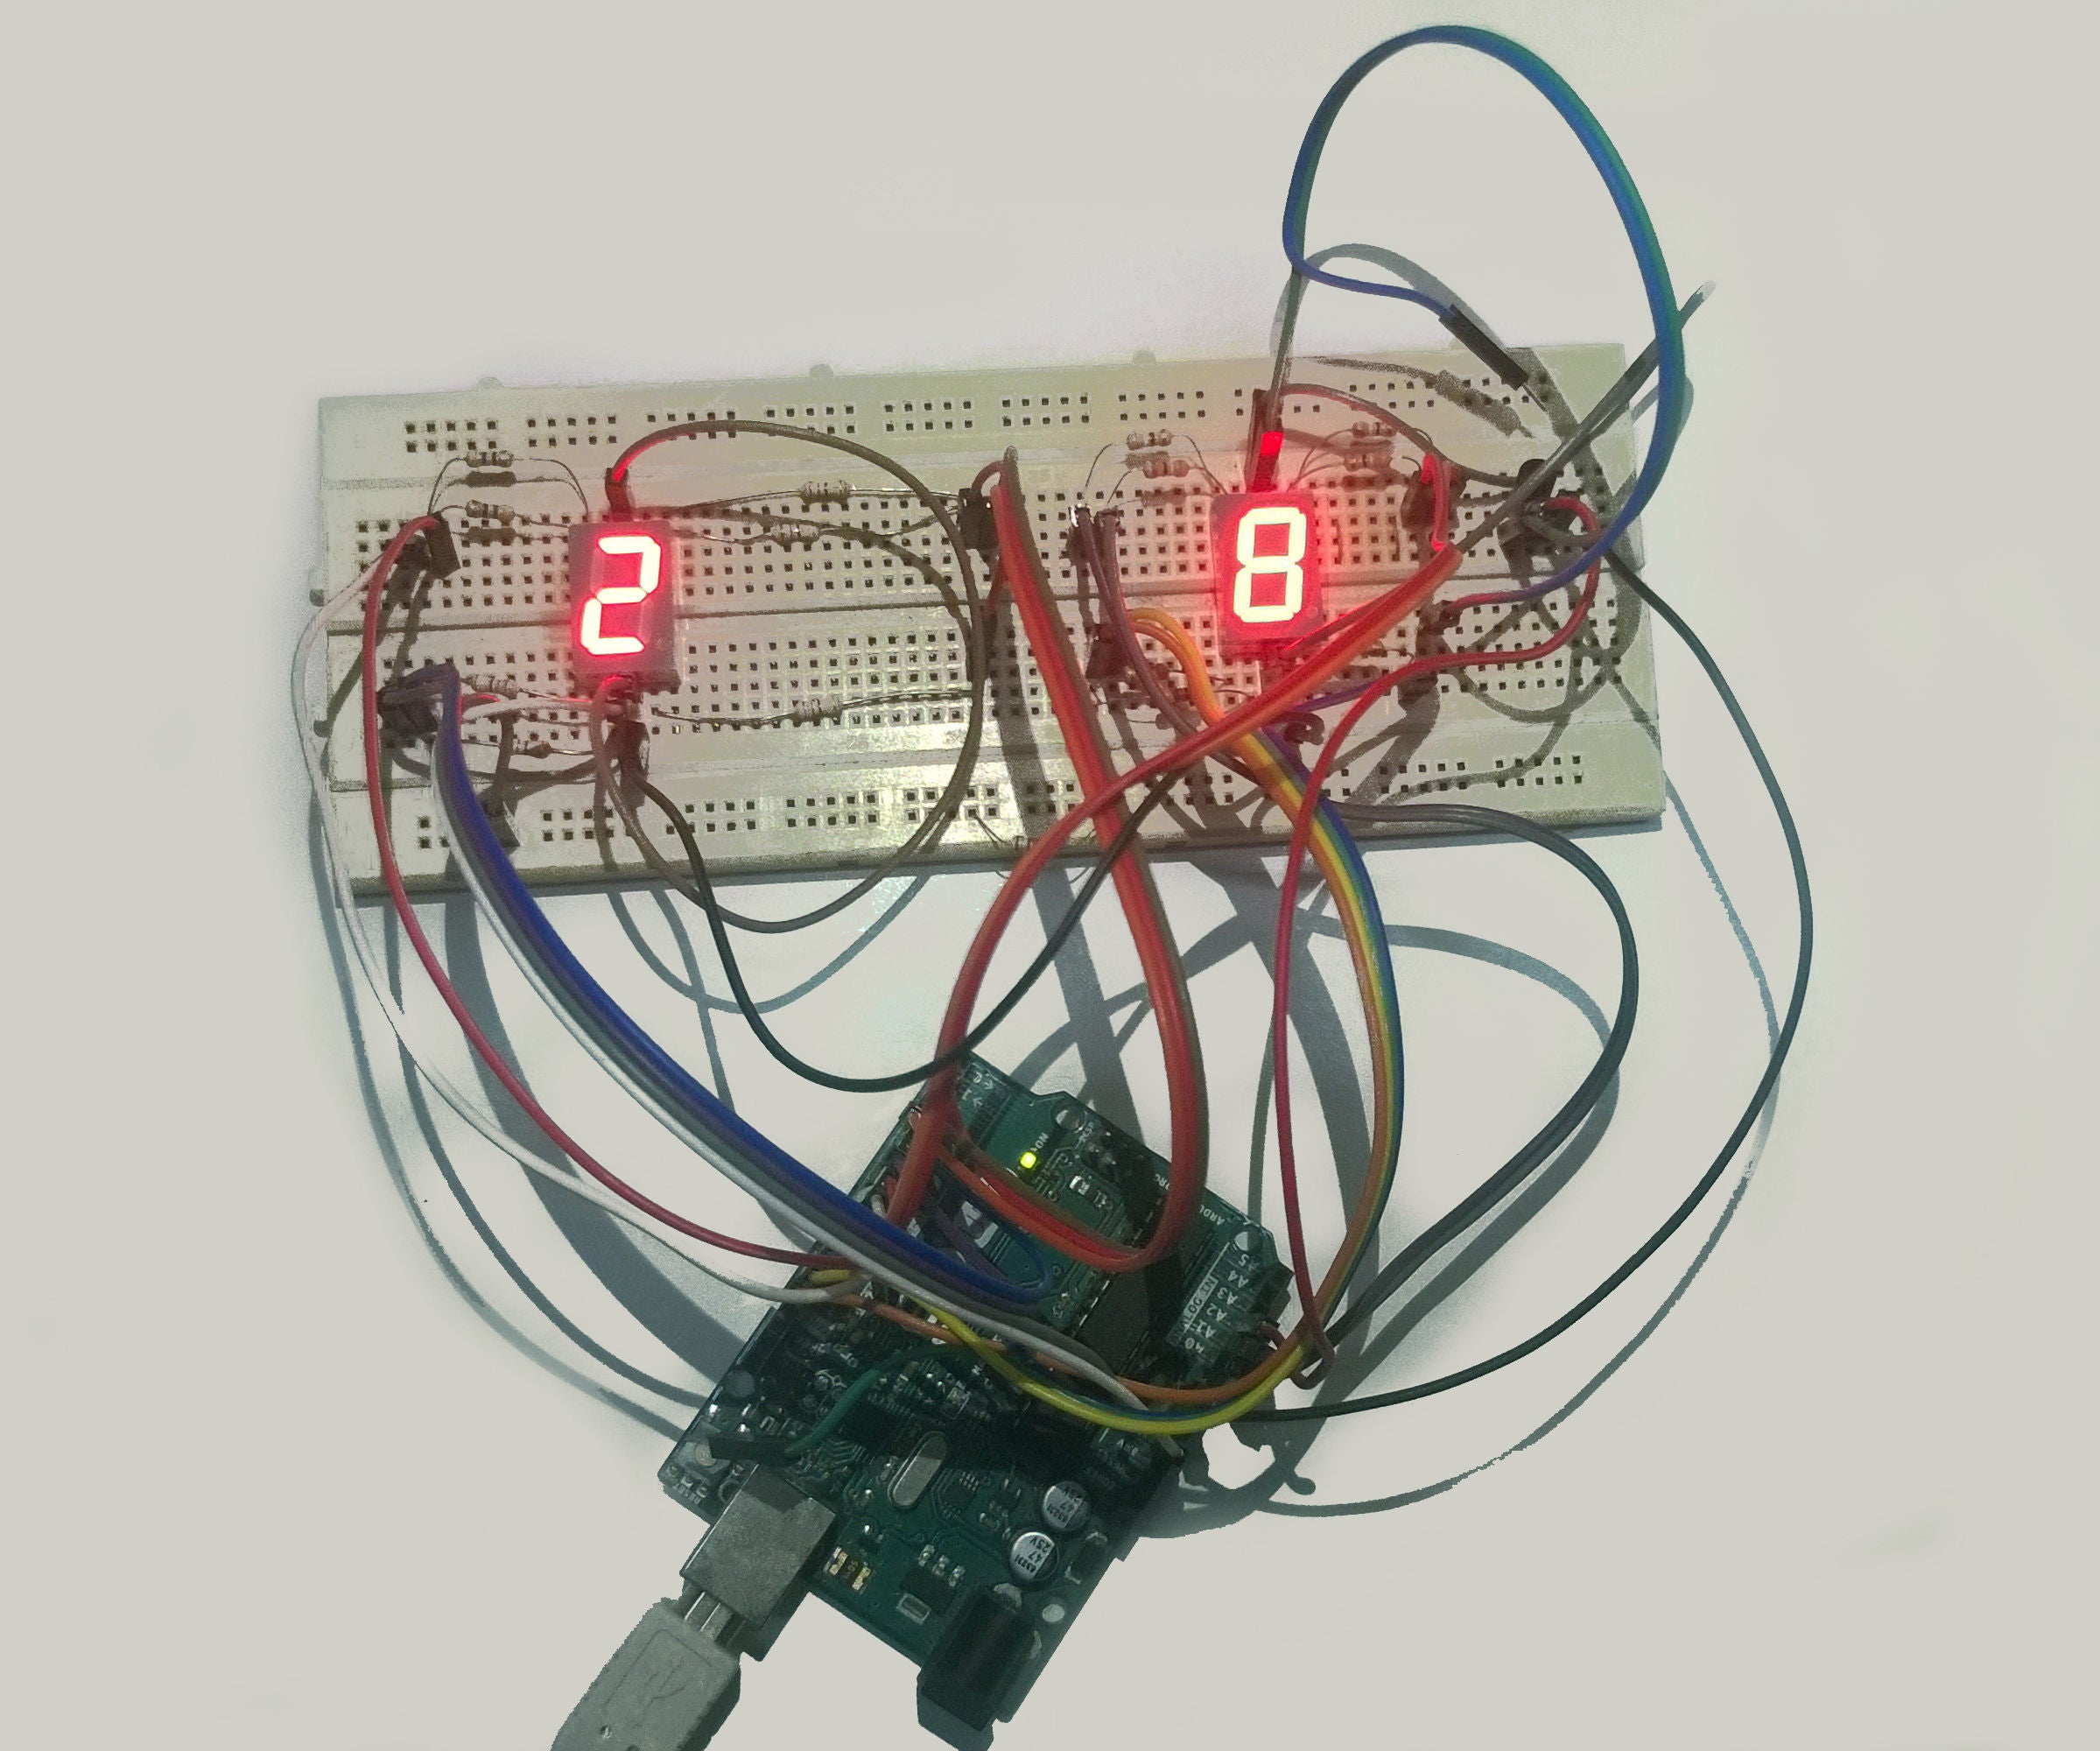 Simple Seven Segment Temperature Display Using Arduino